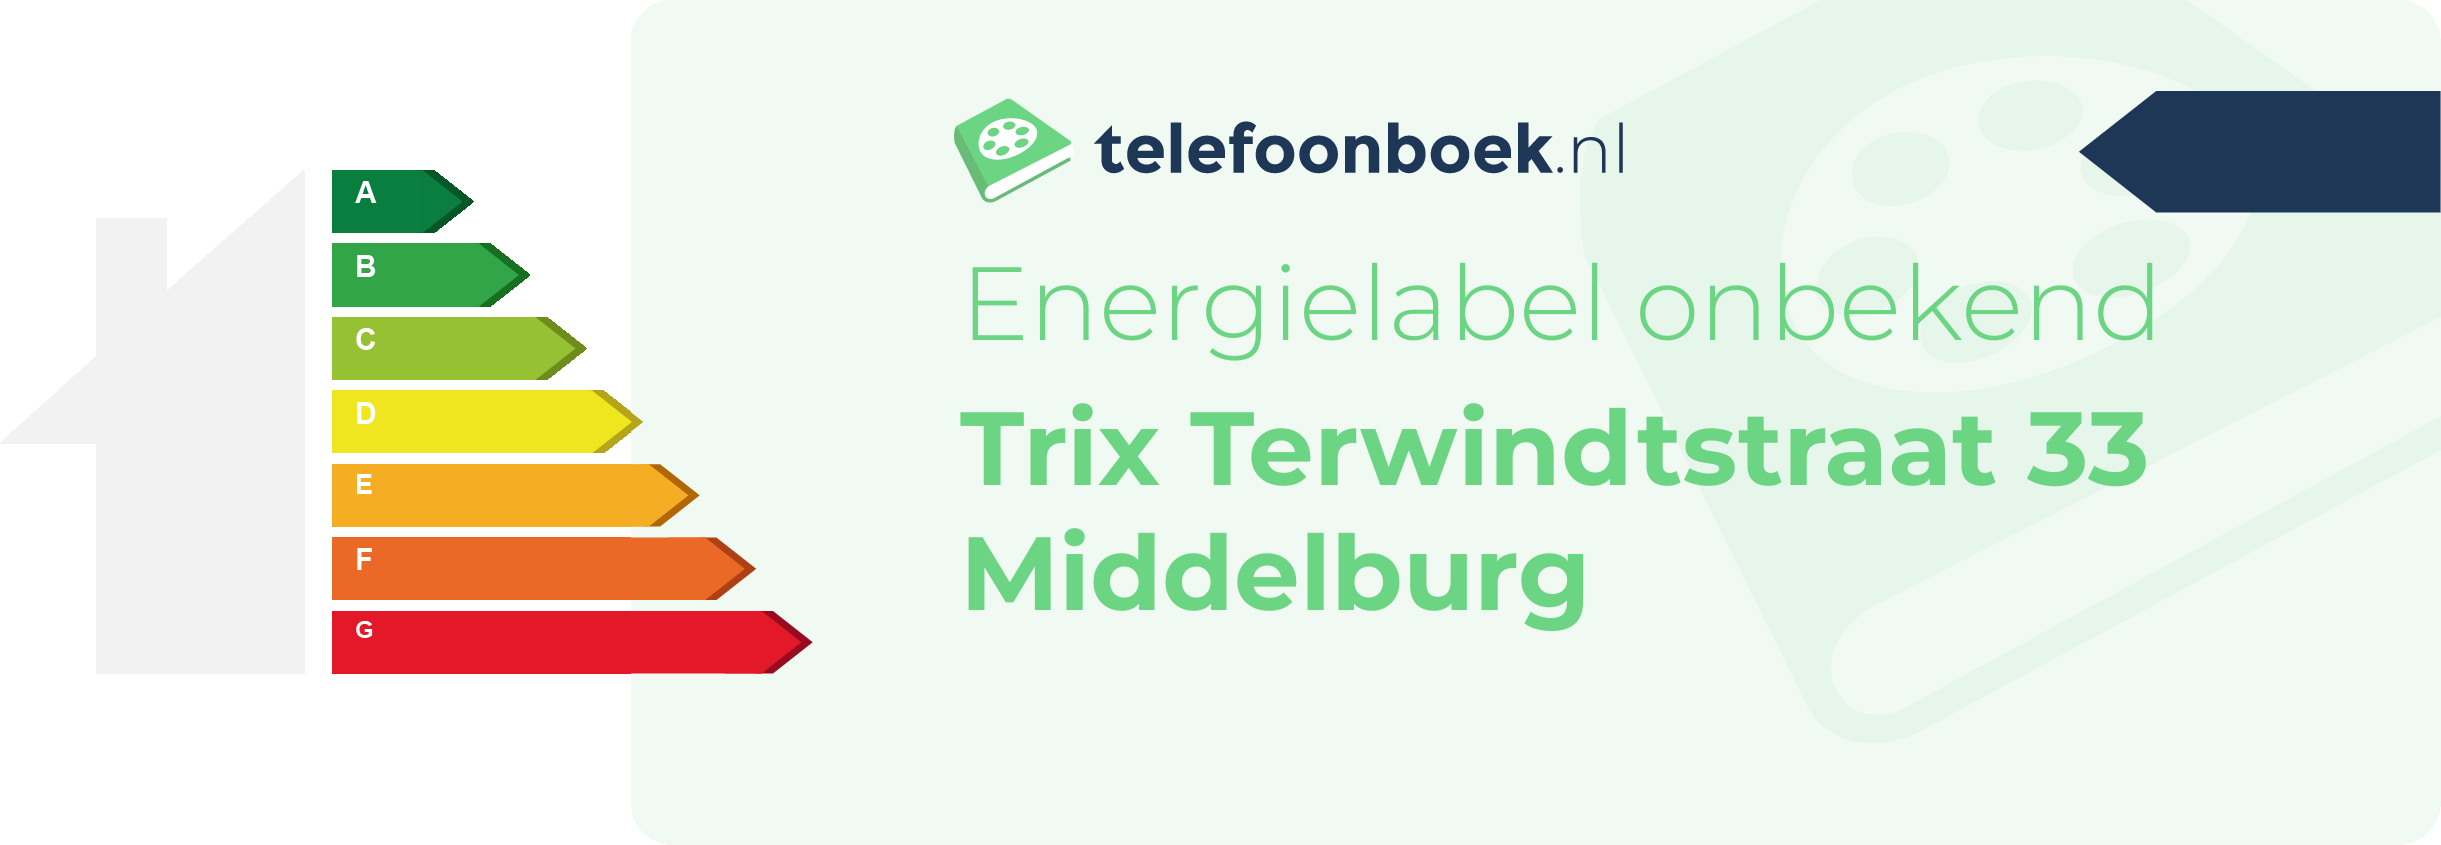 Energielabel Trix Terwindtstraat 33 Middelburg